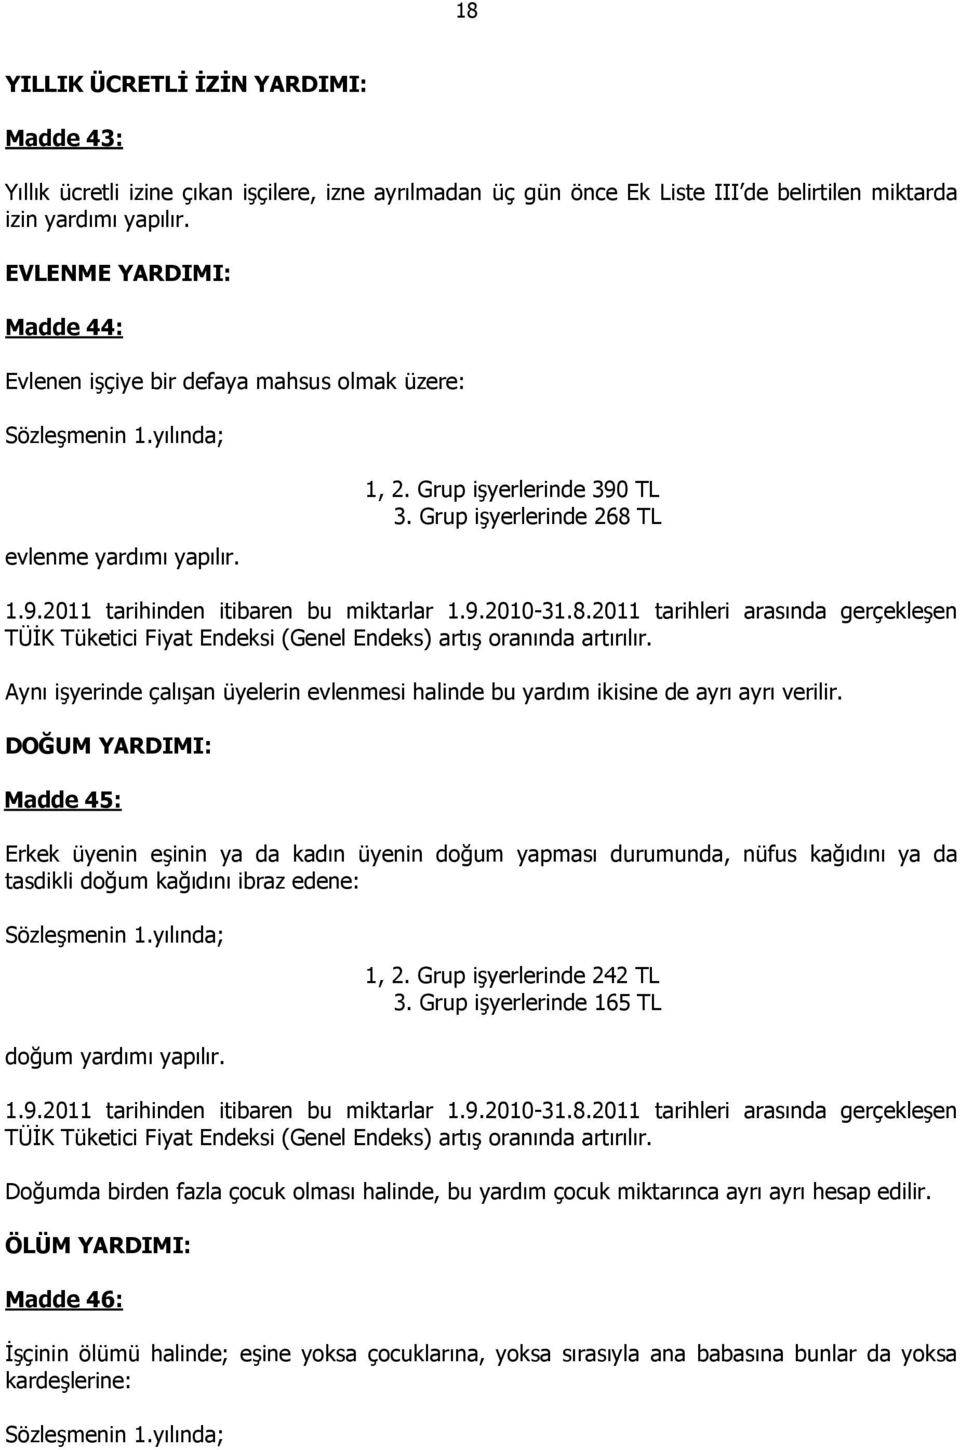 9.2010-31.8.2011 tarihleri arasında gerçekleşen TÜĐK Tüketici Fiyat Endeksi (Genel Endeks) artış oranında artırılır.